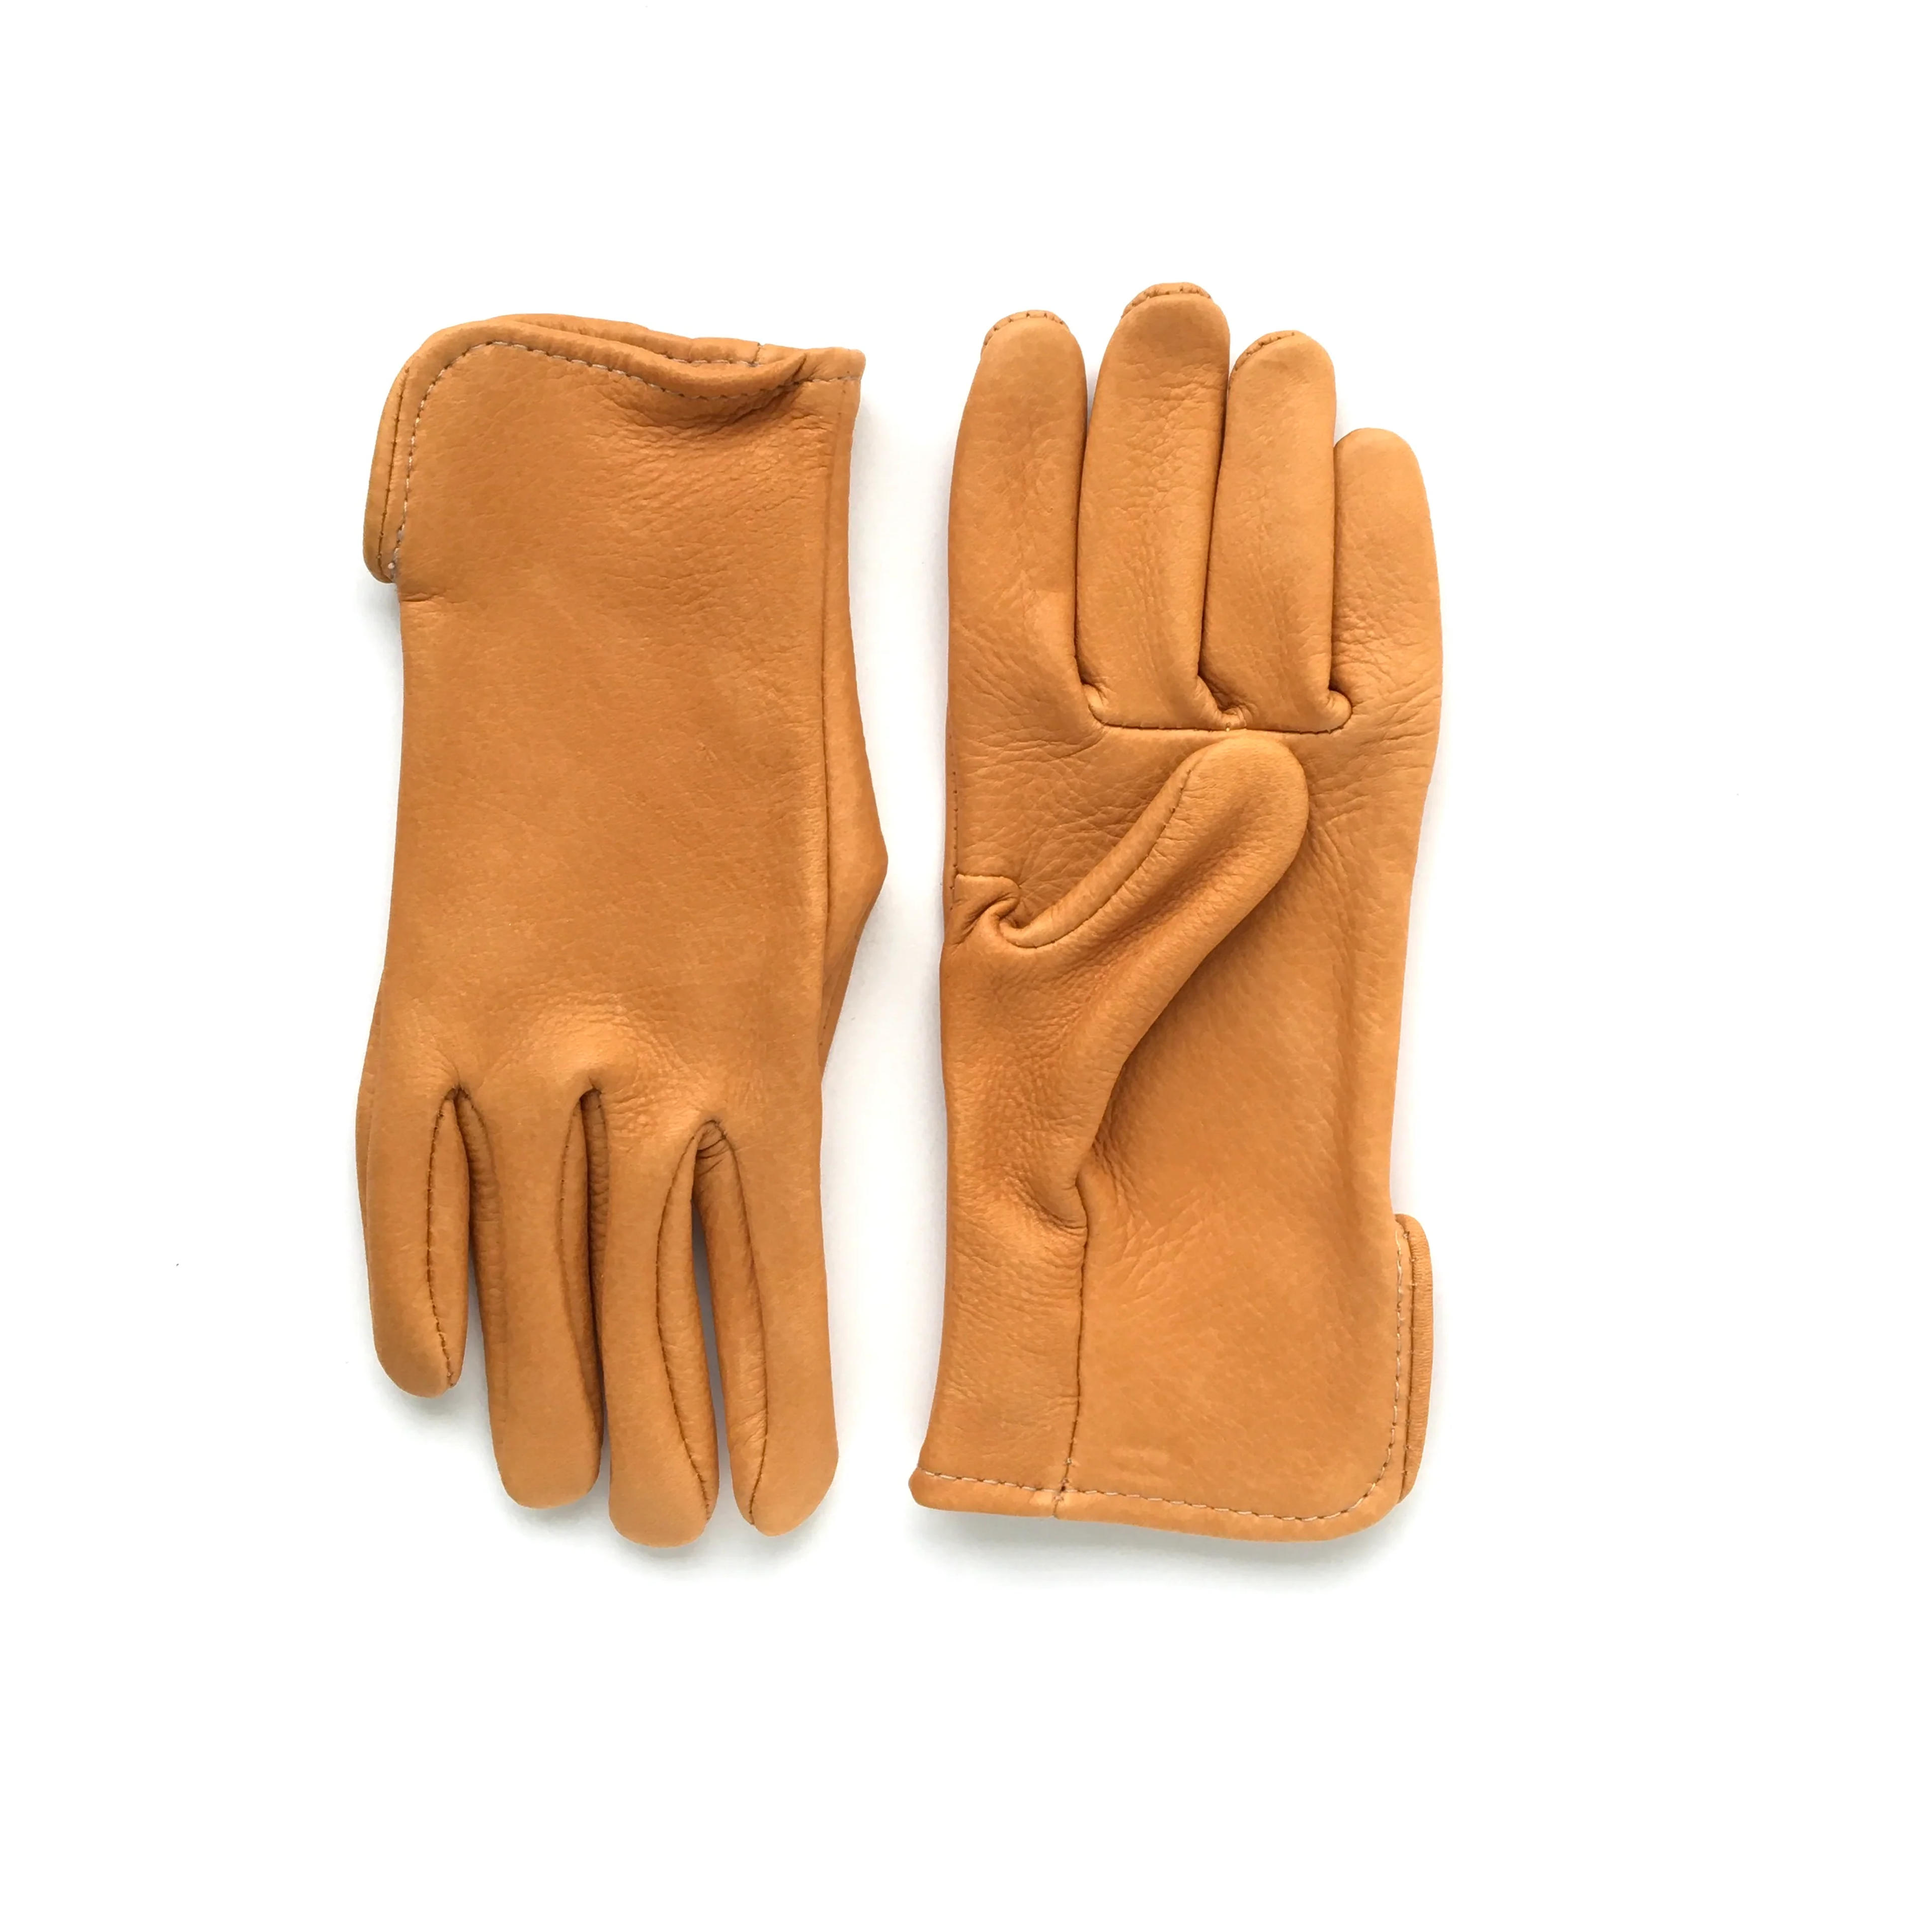 Deerskin Classic – Sullivan Glove Co